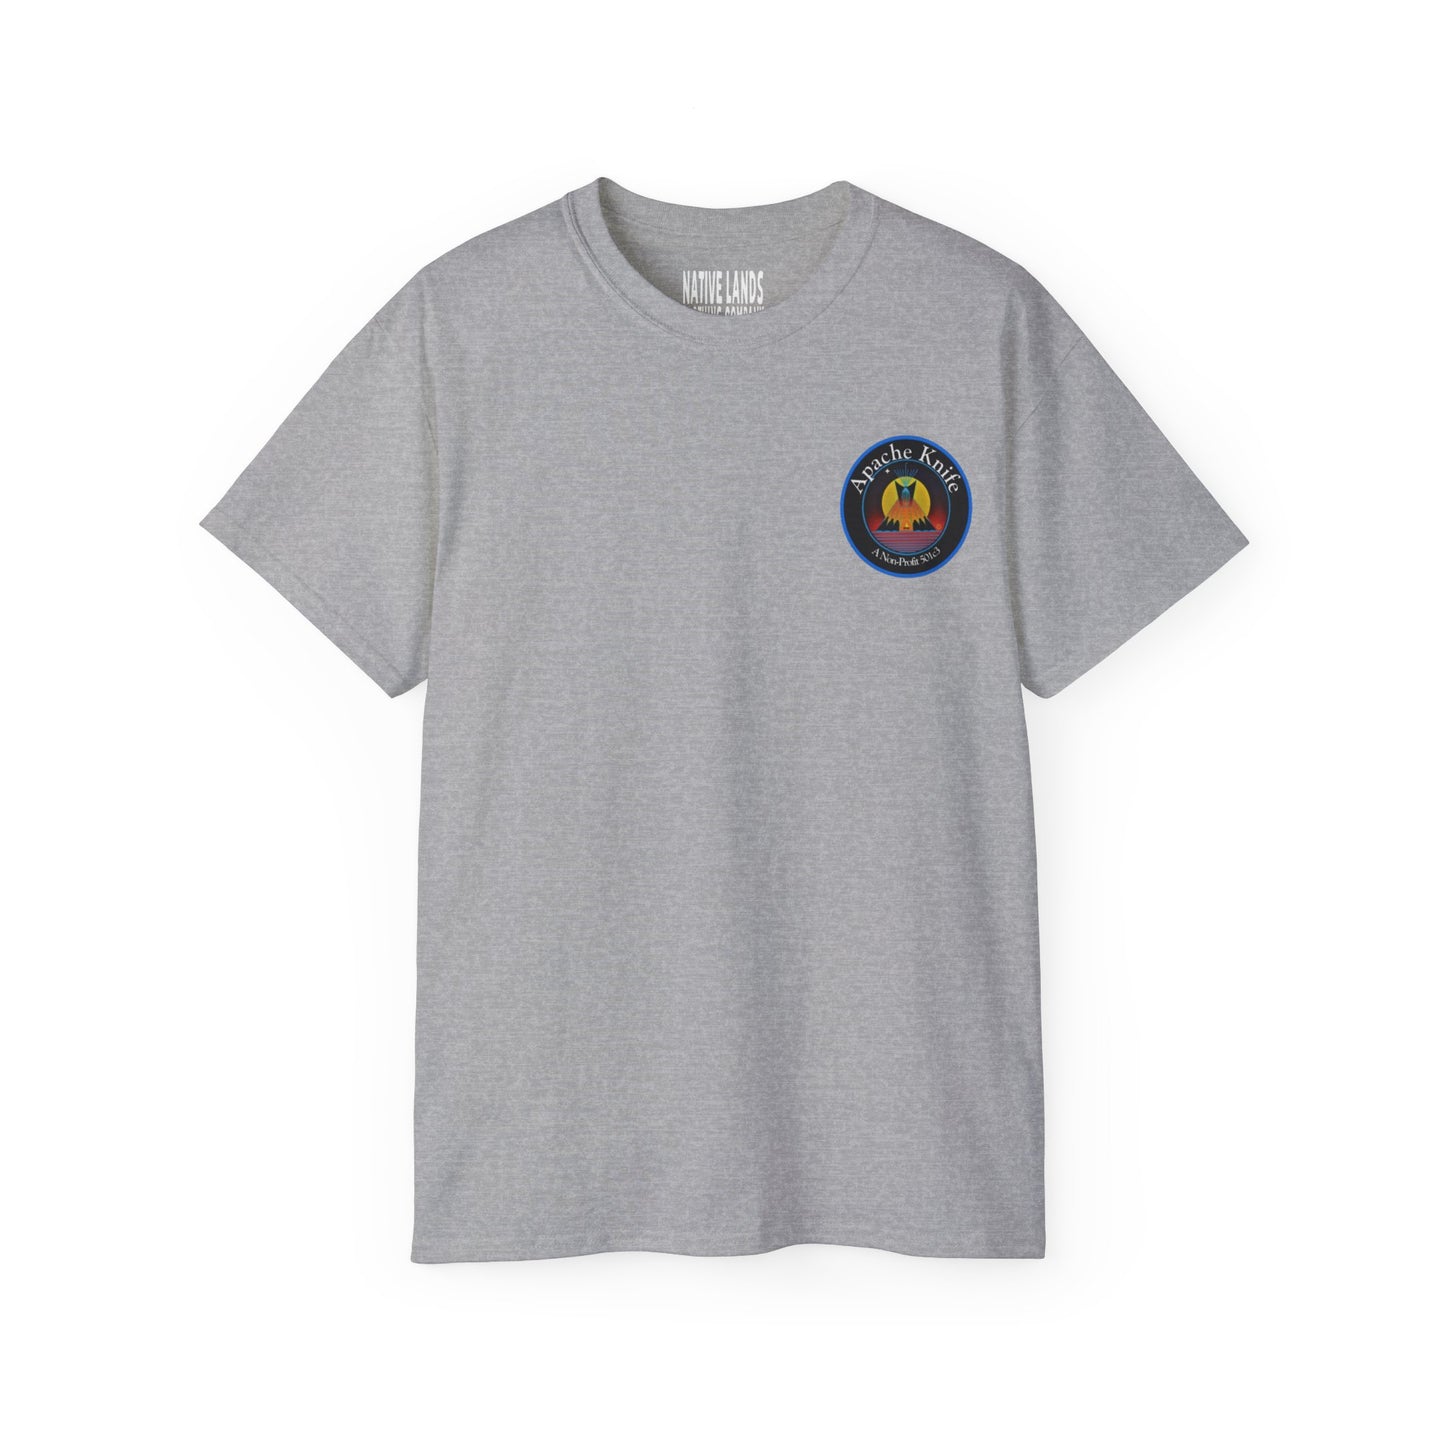 Apache Knife Foundation Shirt Non-Profit Native American (Commande spéciale)